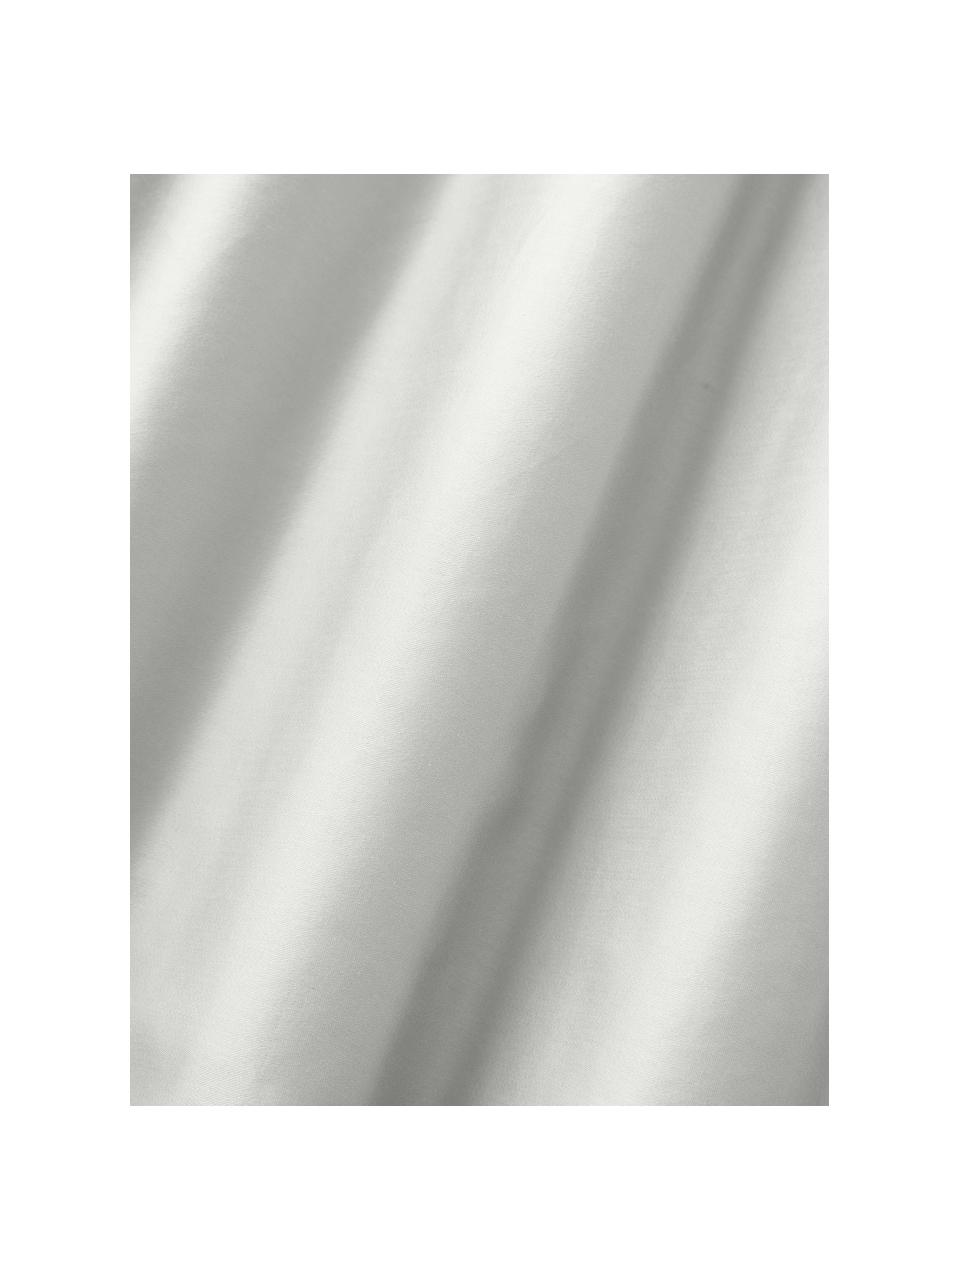 Sábana bajera de satén Comfort, Gris claro, Cama 90 cm (90 x 200 x 25 cm)